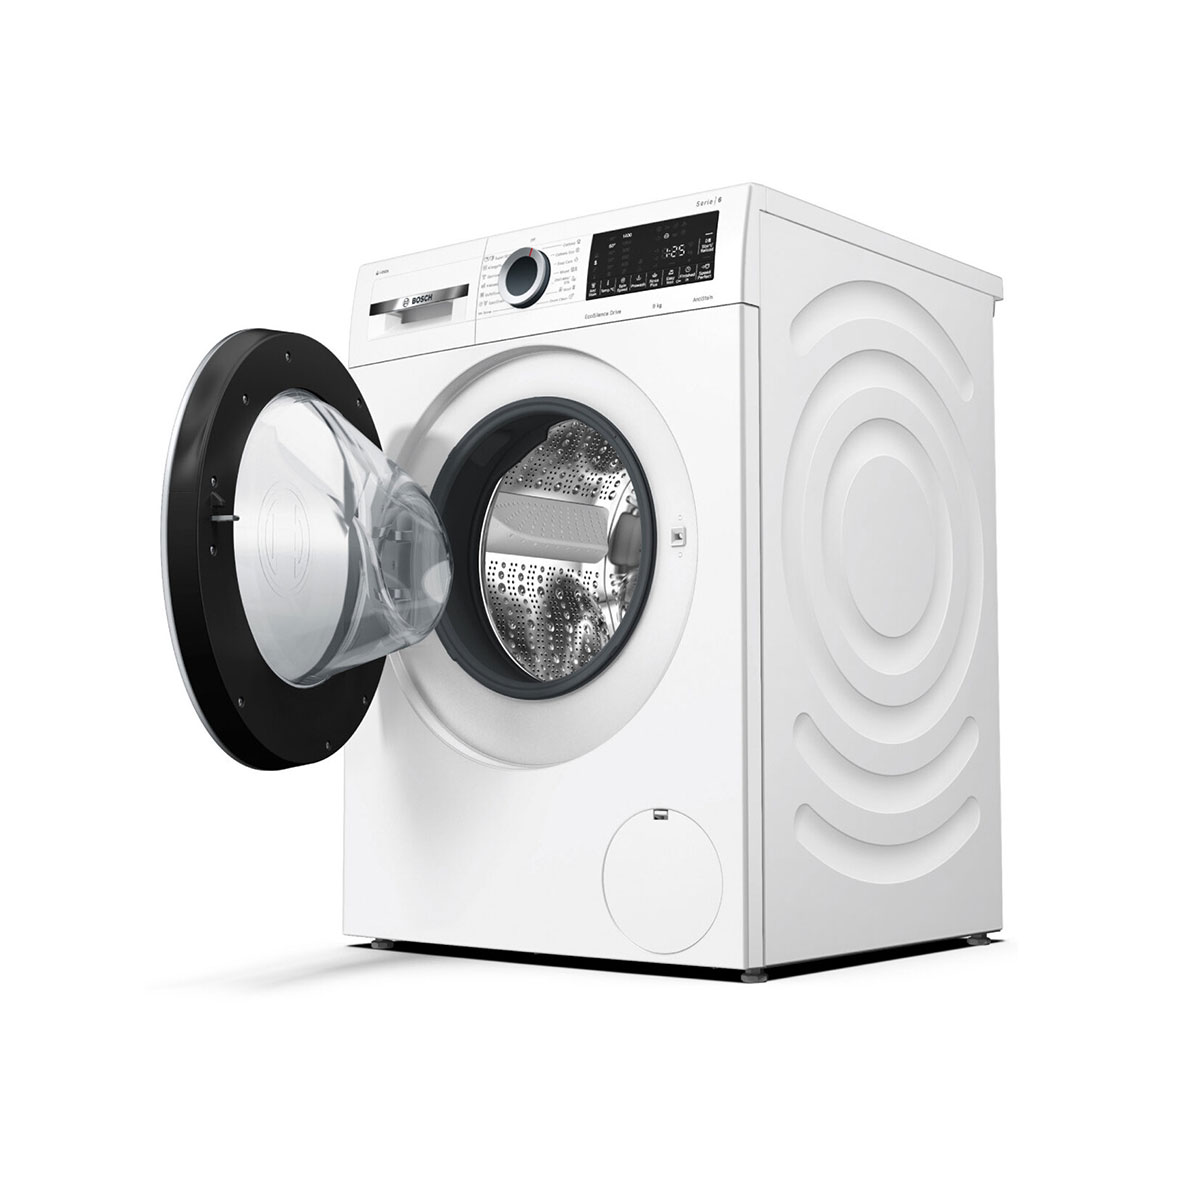 Series-6-washing-machine,-front-loader-9-kg-WAT28S80GC